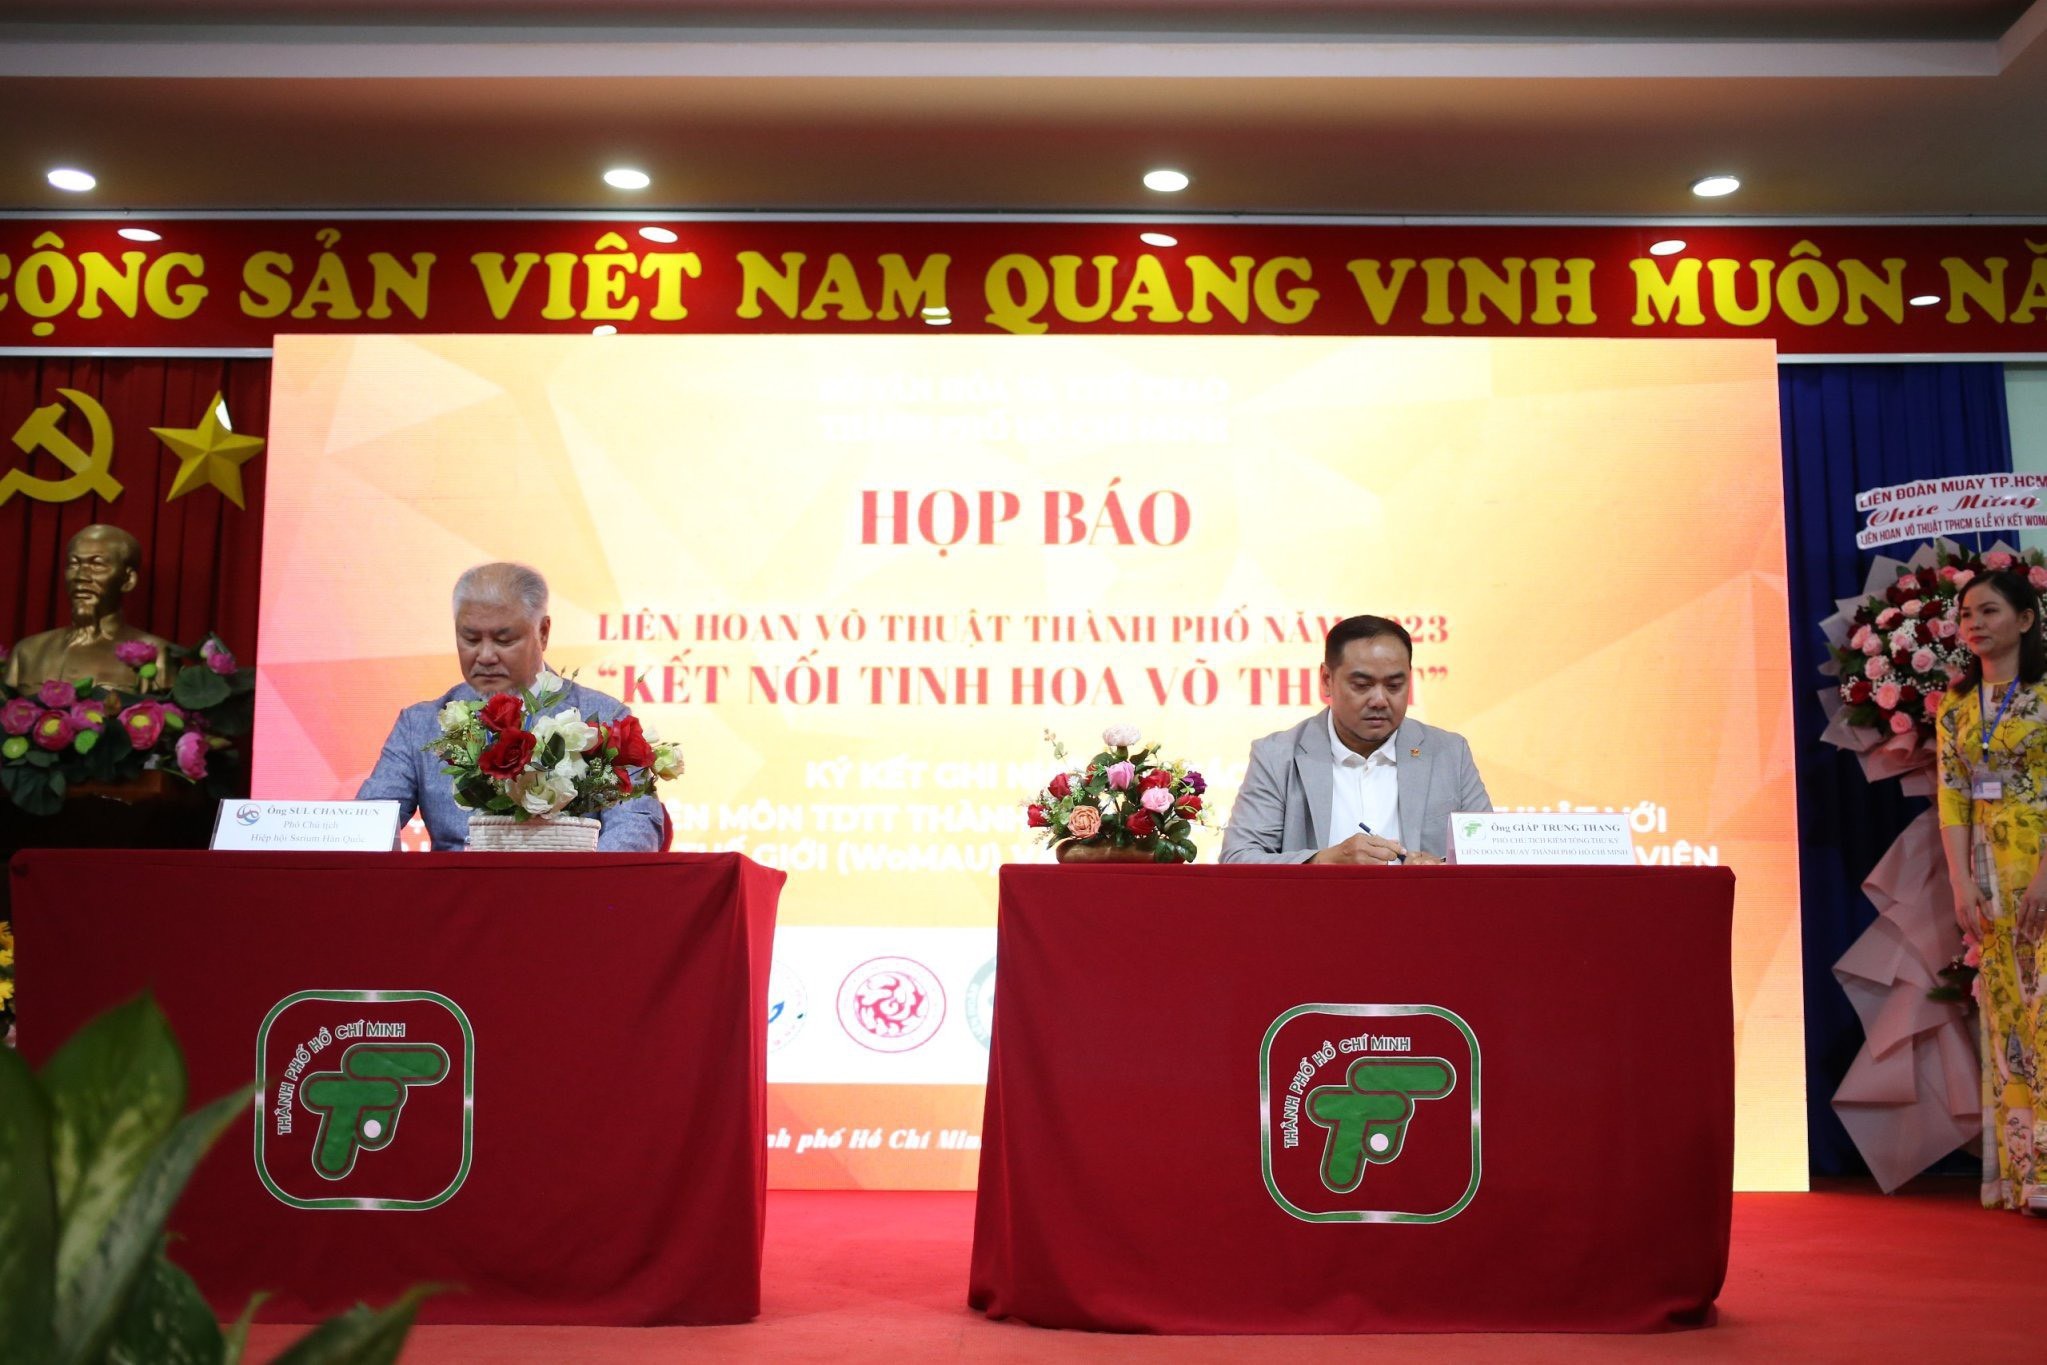 Khởi động Liên hoan Võ thuật Thành phố Hồ Chí Minh năm 2023 “Kết nối tinh hoa Võ thuật”